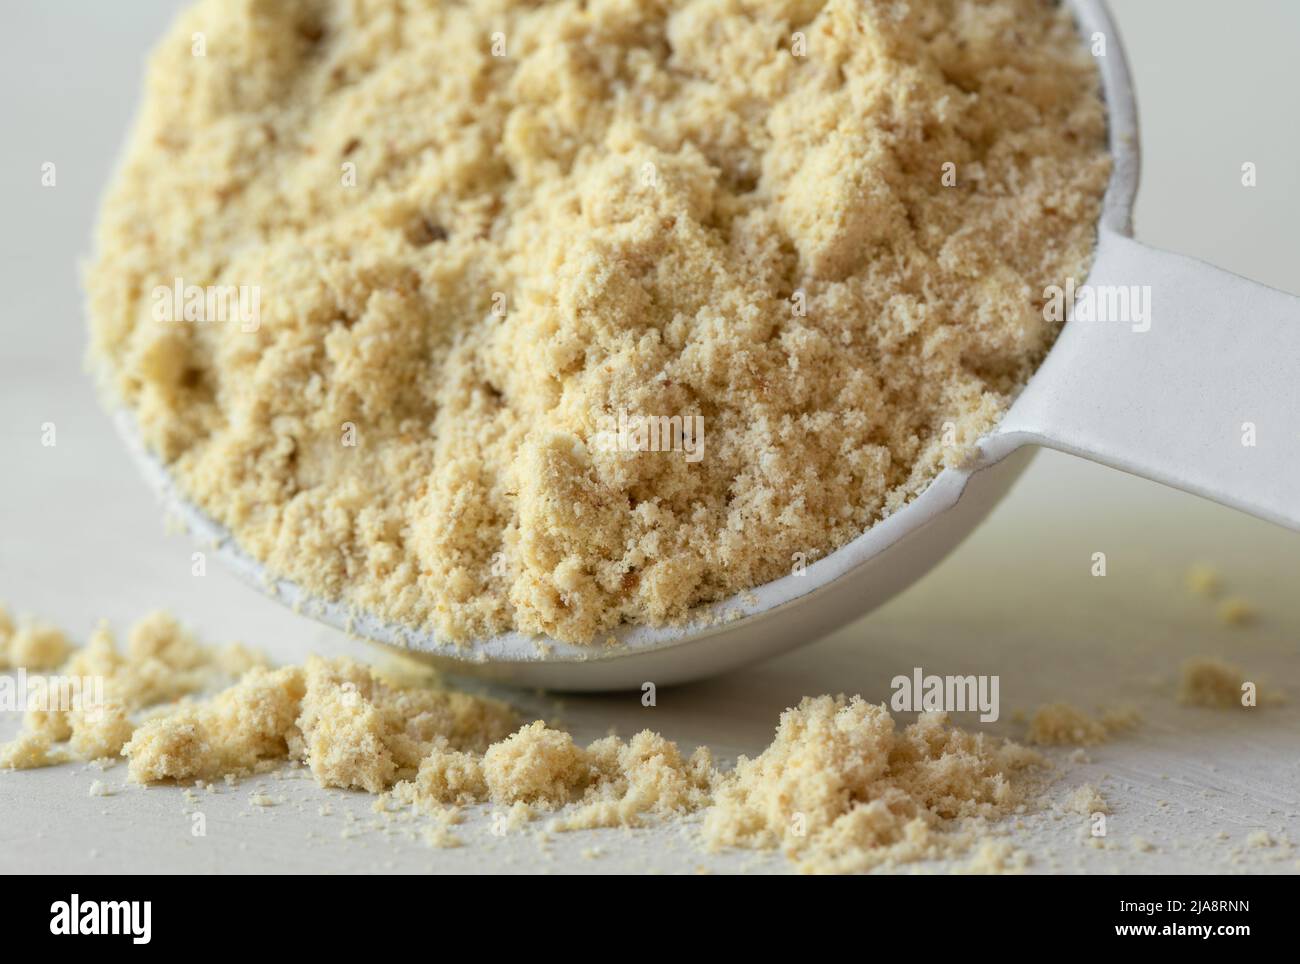 Polvo de proteína de vainilla derramado de una cucharadita Foto de stock